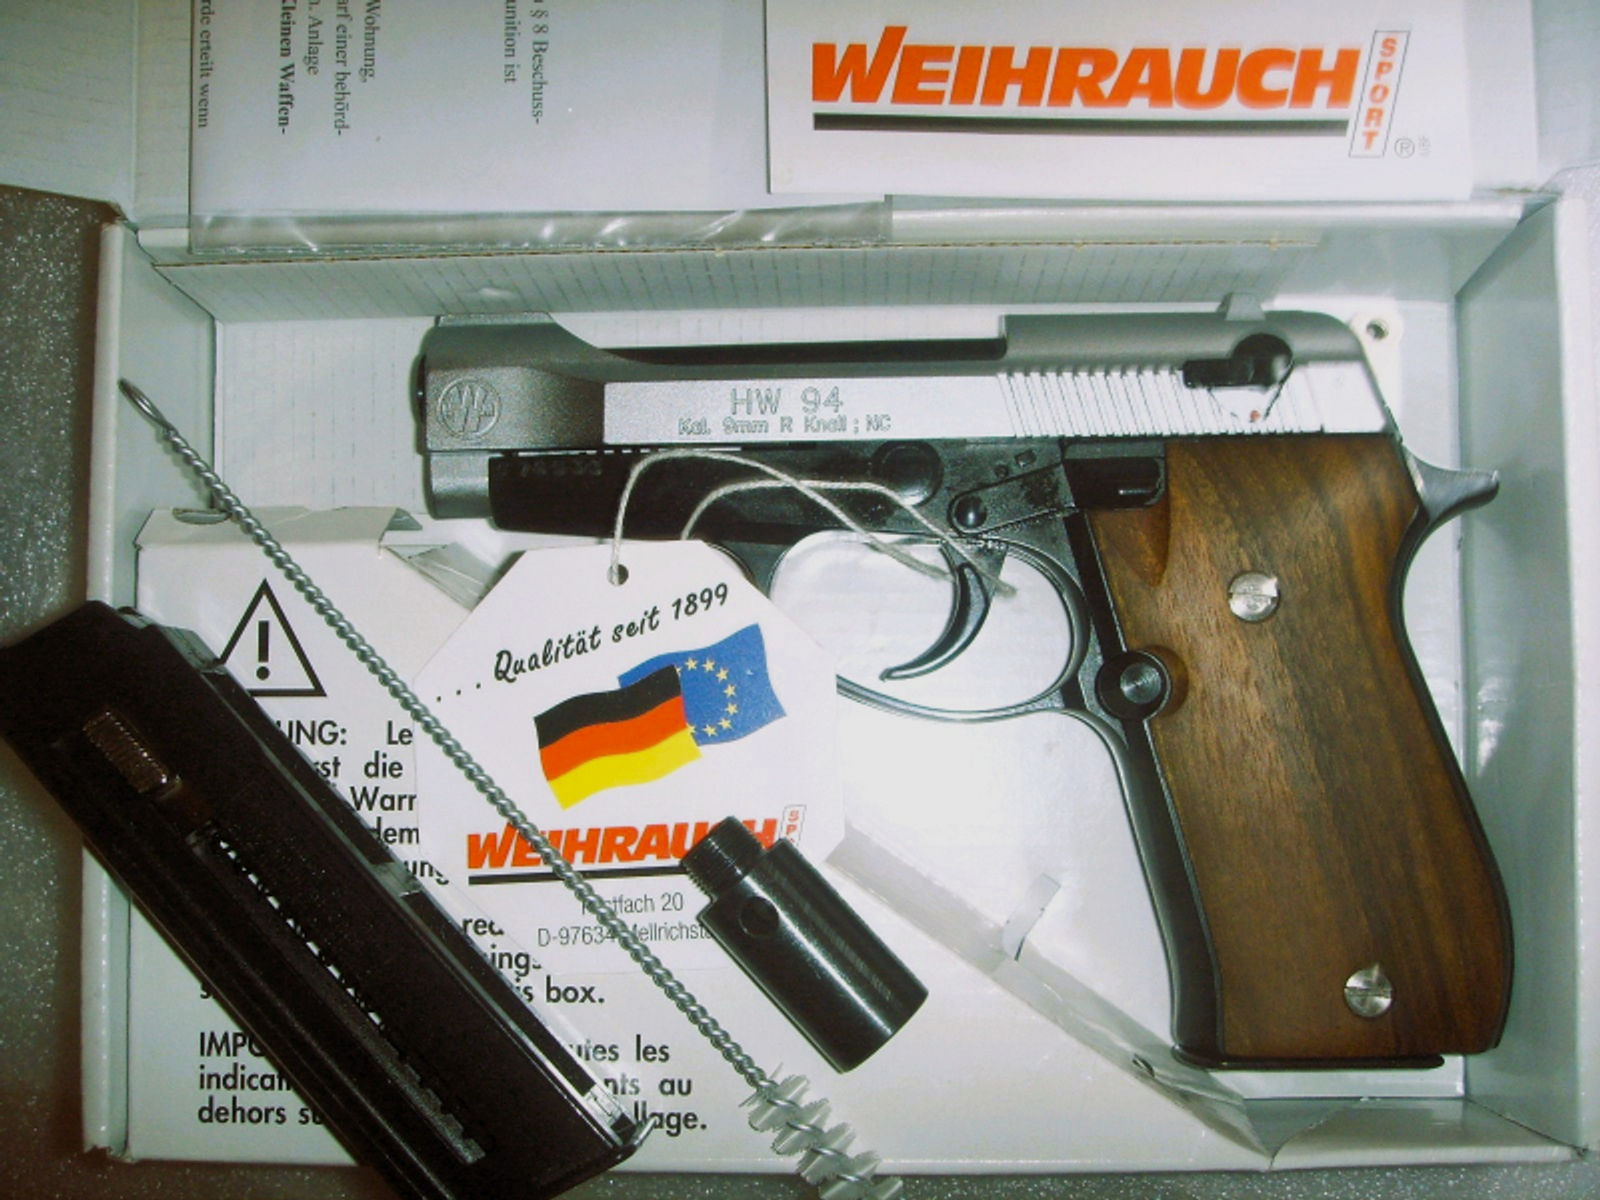 Weihrauch HW 94 BiColor m. Holzgriffschalen, inkl. 2 Magazine, OVP, neuw. u. ungeschossen